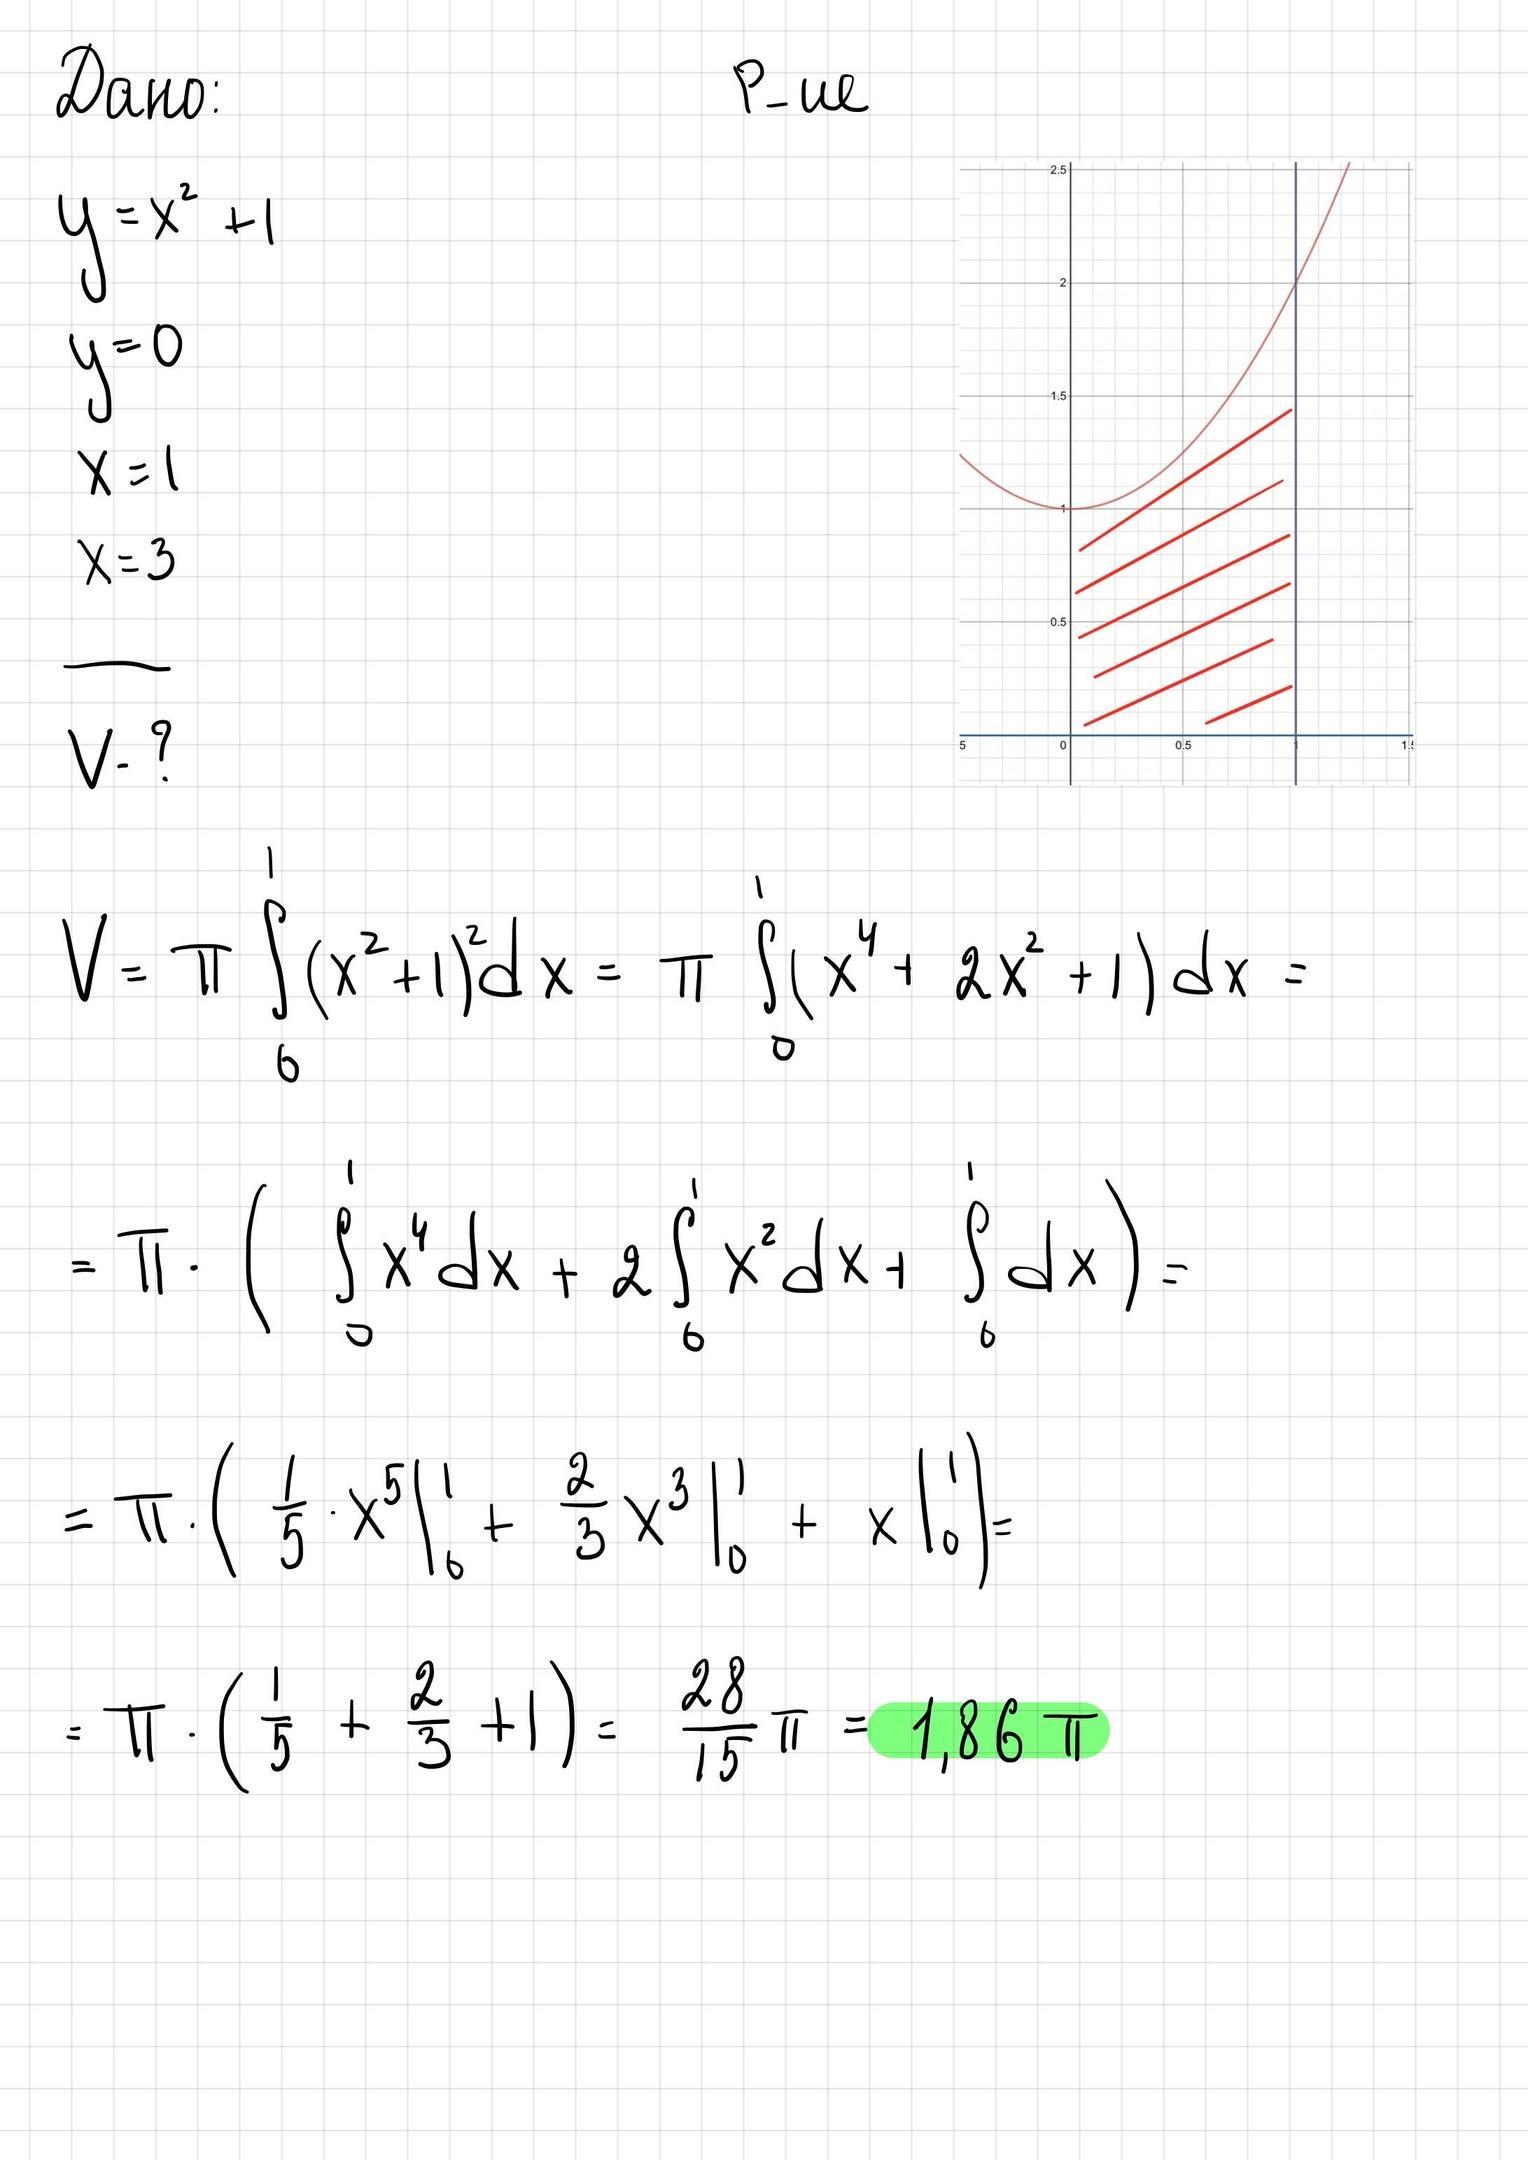 Ох y 0. Объём вращения фигуры ограниченной линиями. Y=X^2 вокруг оси оx y=0 x=0 x=2. Вычислить объём вращения фигуры вокруг оси ох ограниченной линиями. Фигура ограниченная линиями y=2 y=0 x1=0 x=2.